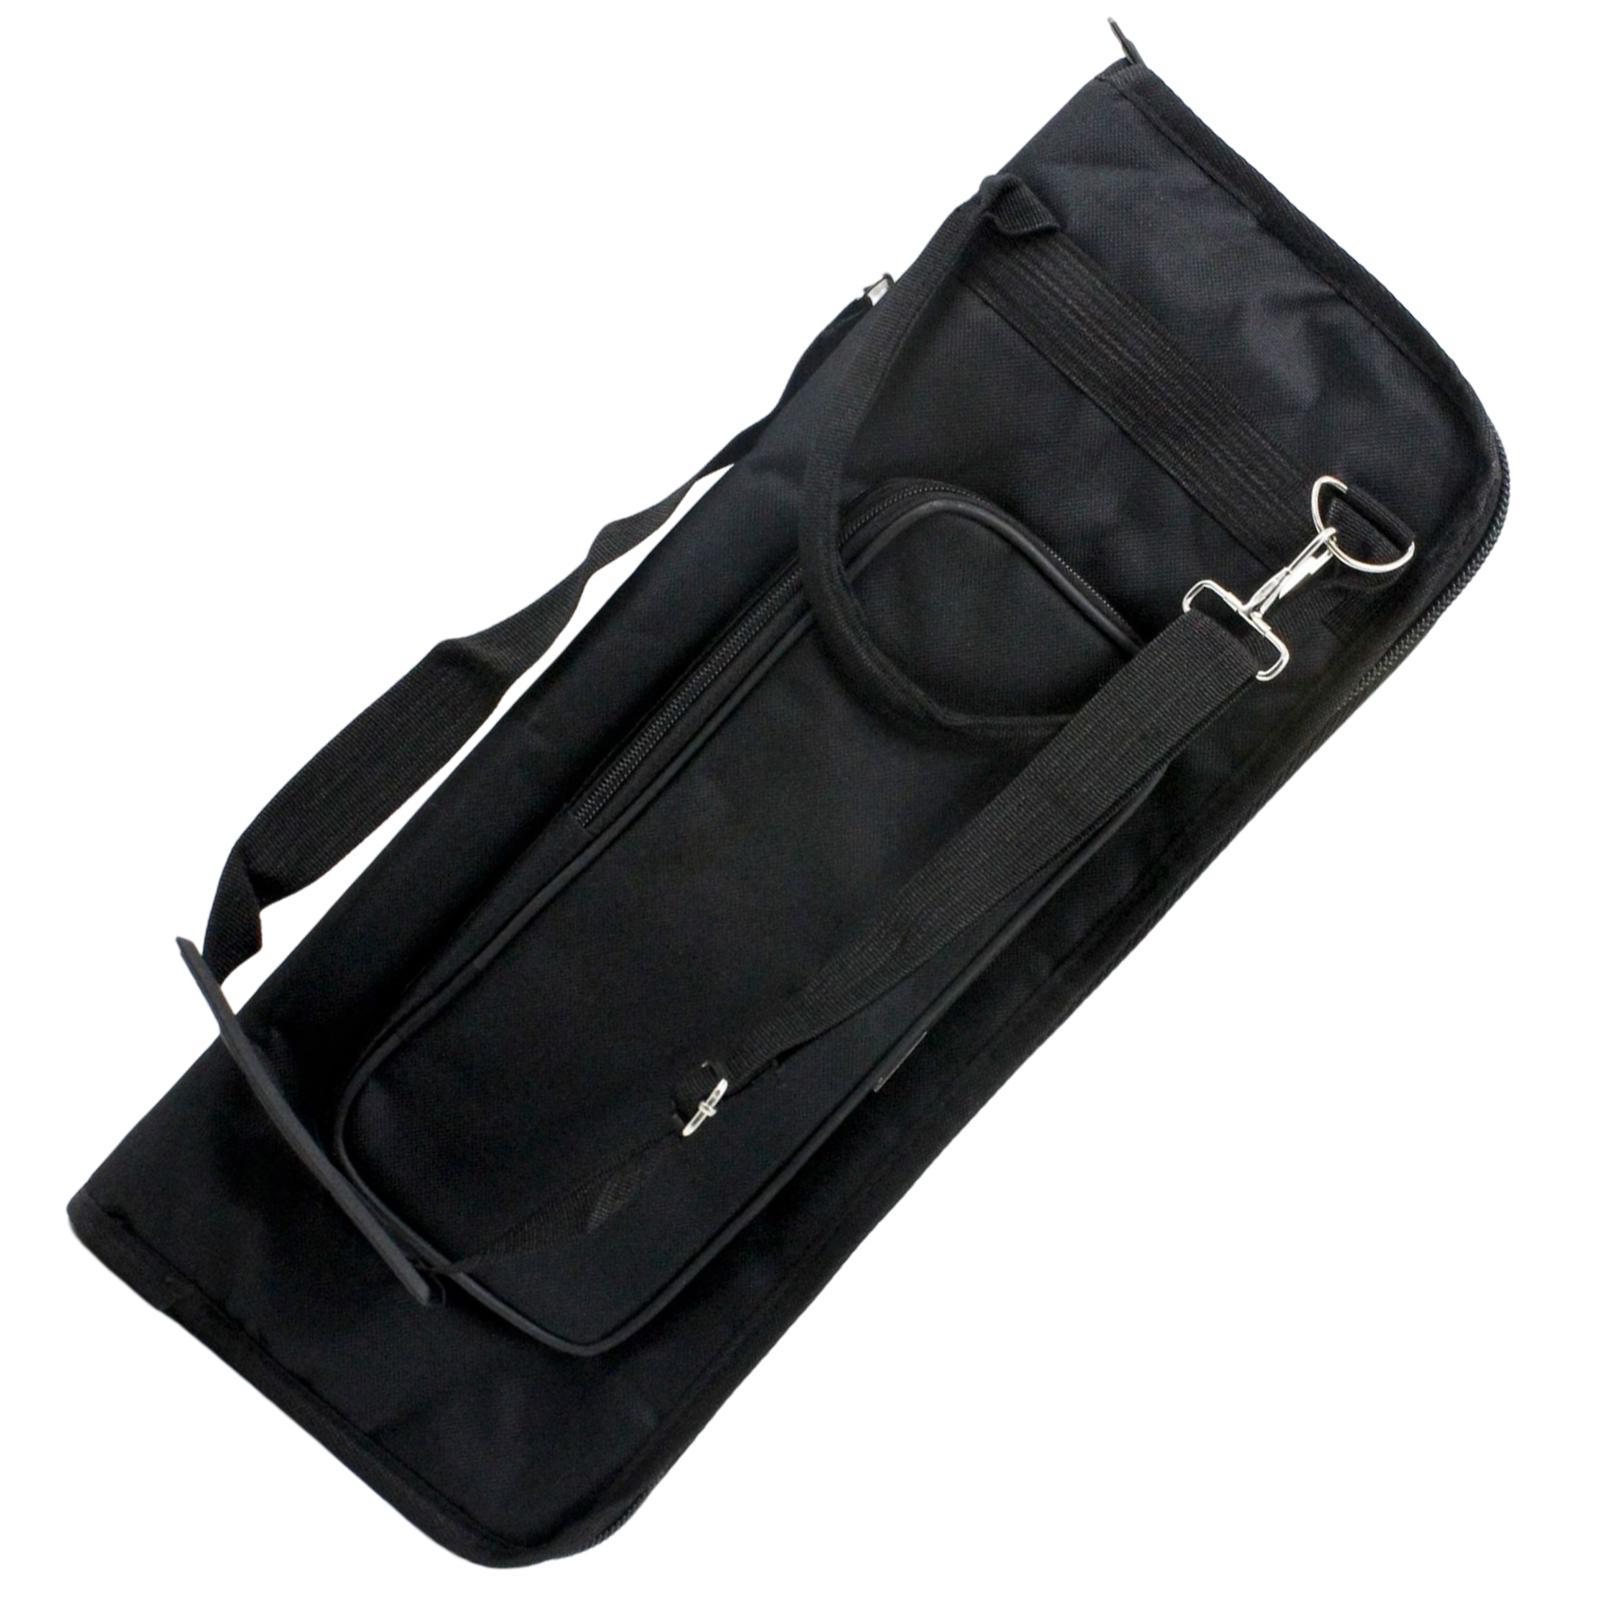 Adjustable Drum Stick Gig Bag 5 Pockets Drumstick Carry Case for Concert